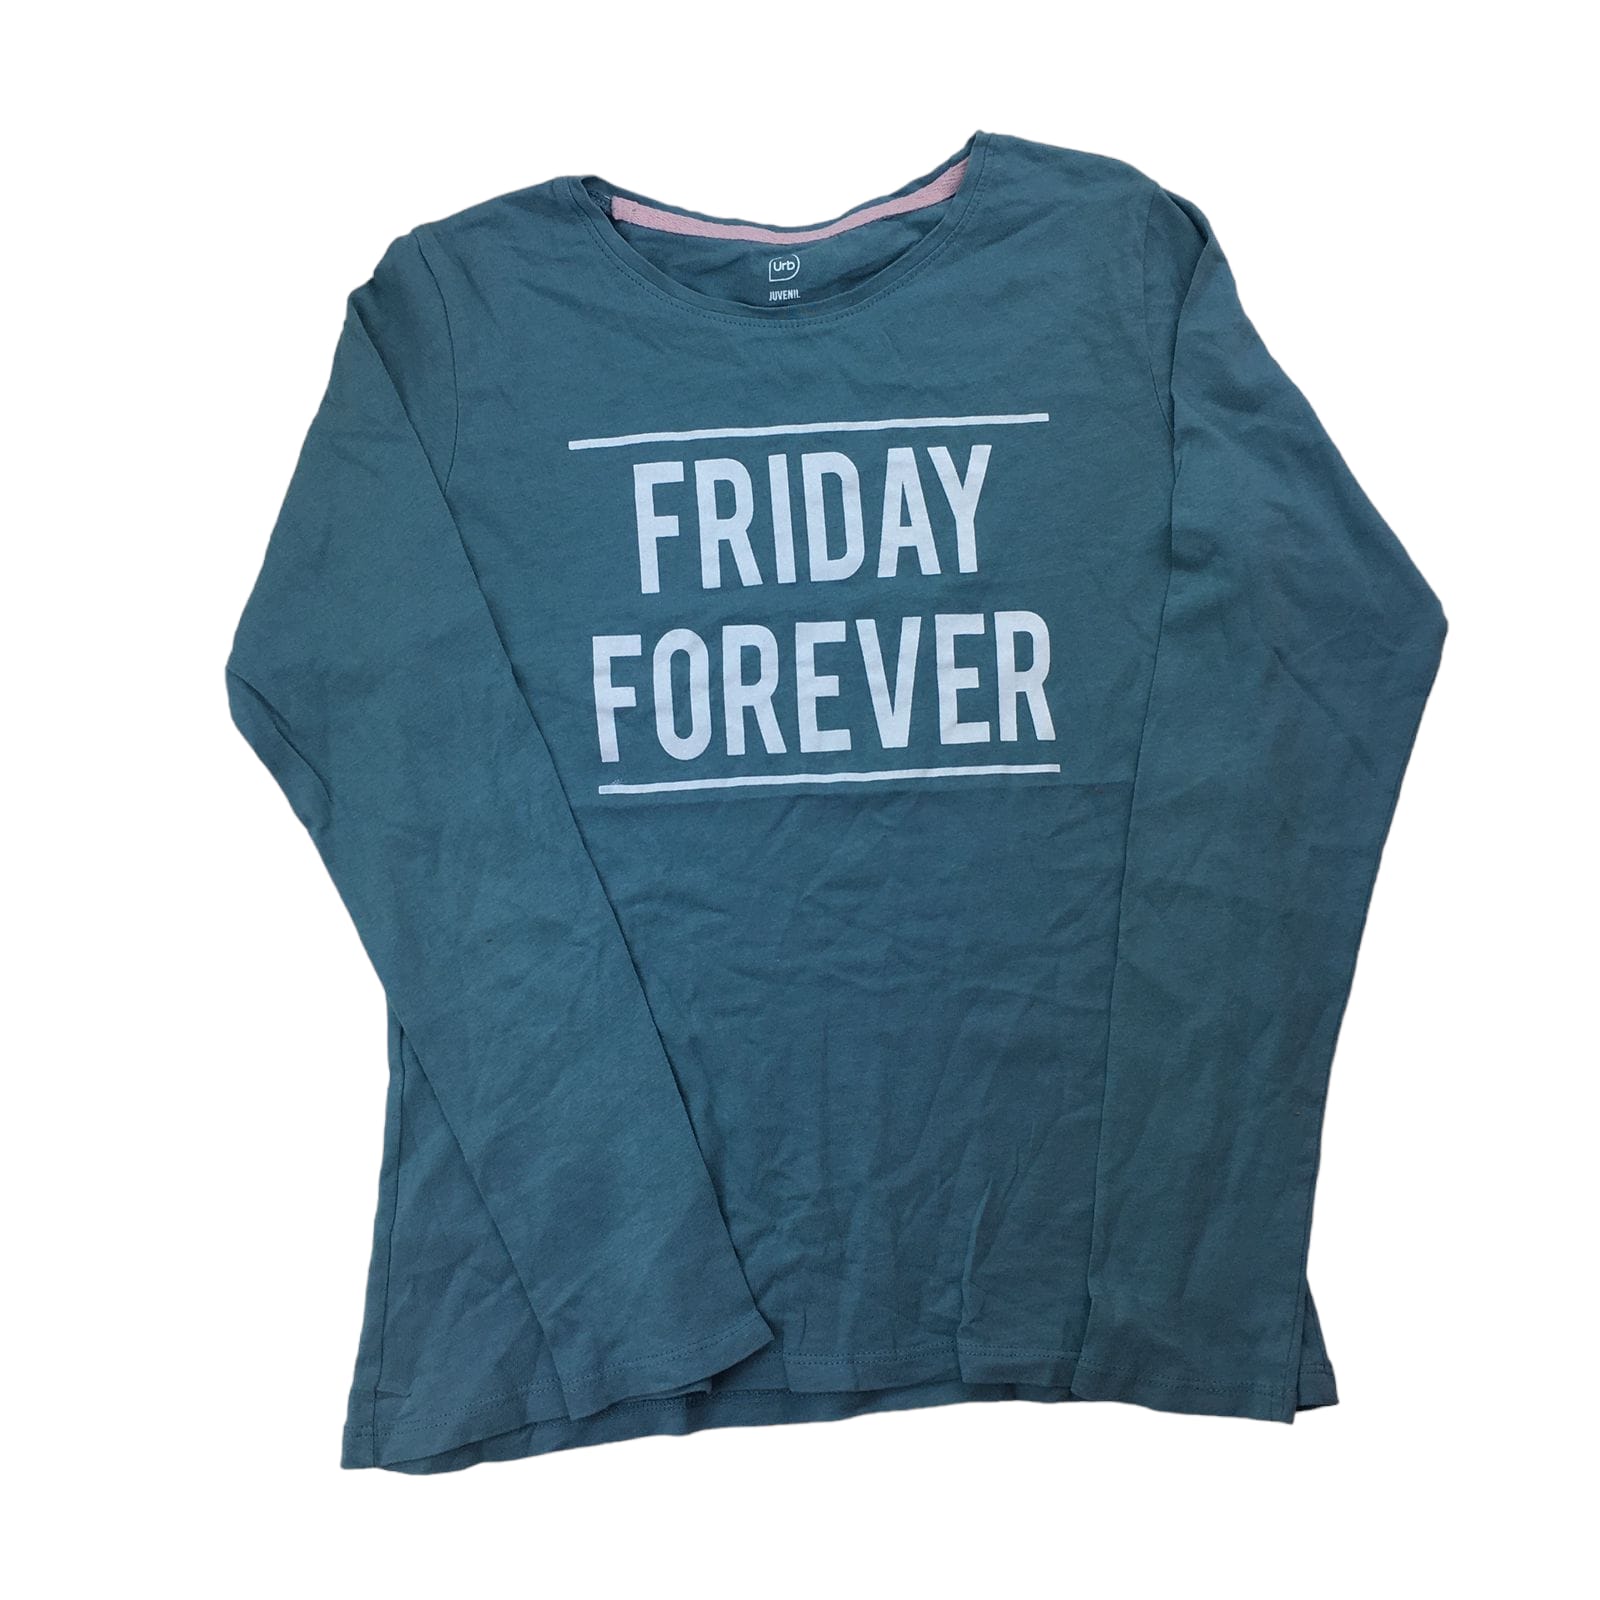 Polera manga larga azul "Friday Forever"